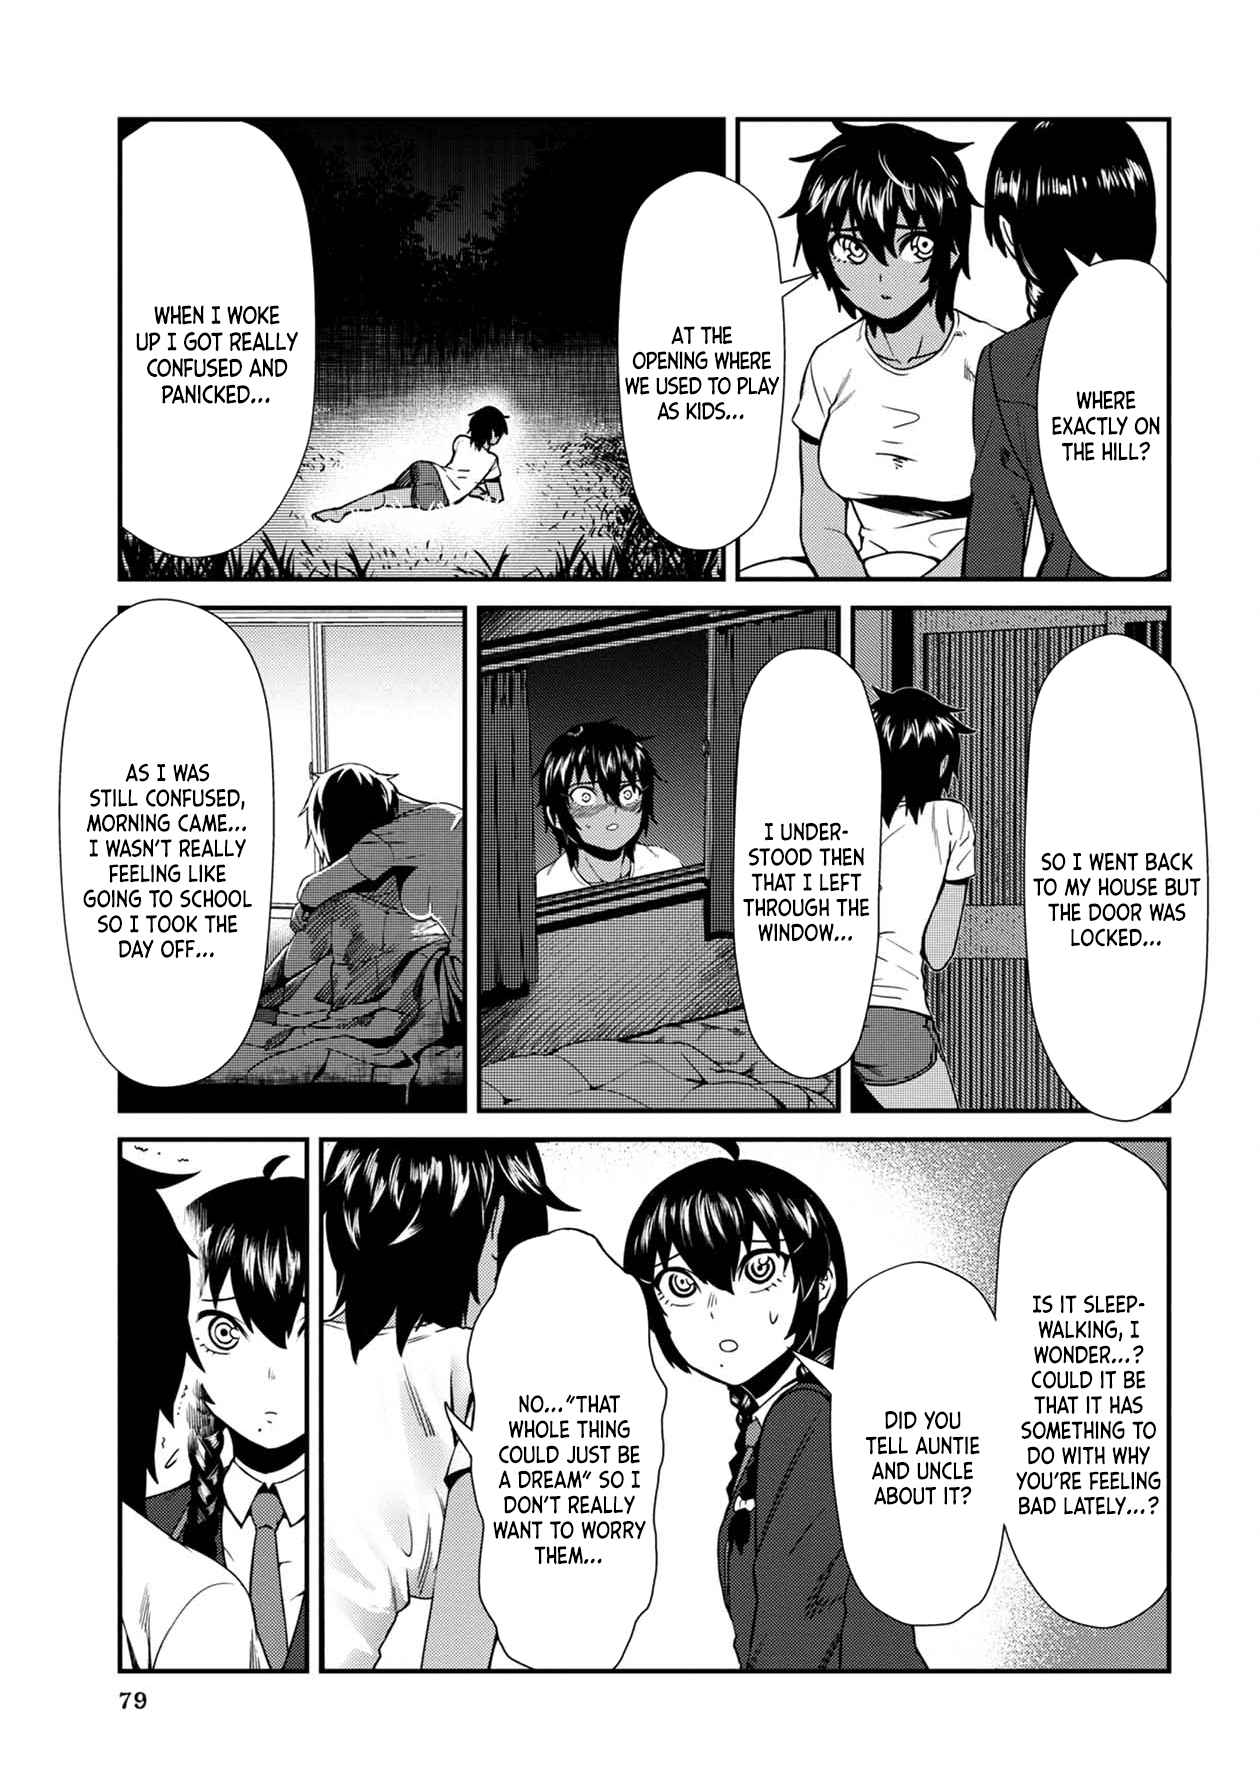 Furyou Taimashi Reina Vol. 1 Ch. 5 Exorcism #5 Kokoro And Riku